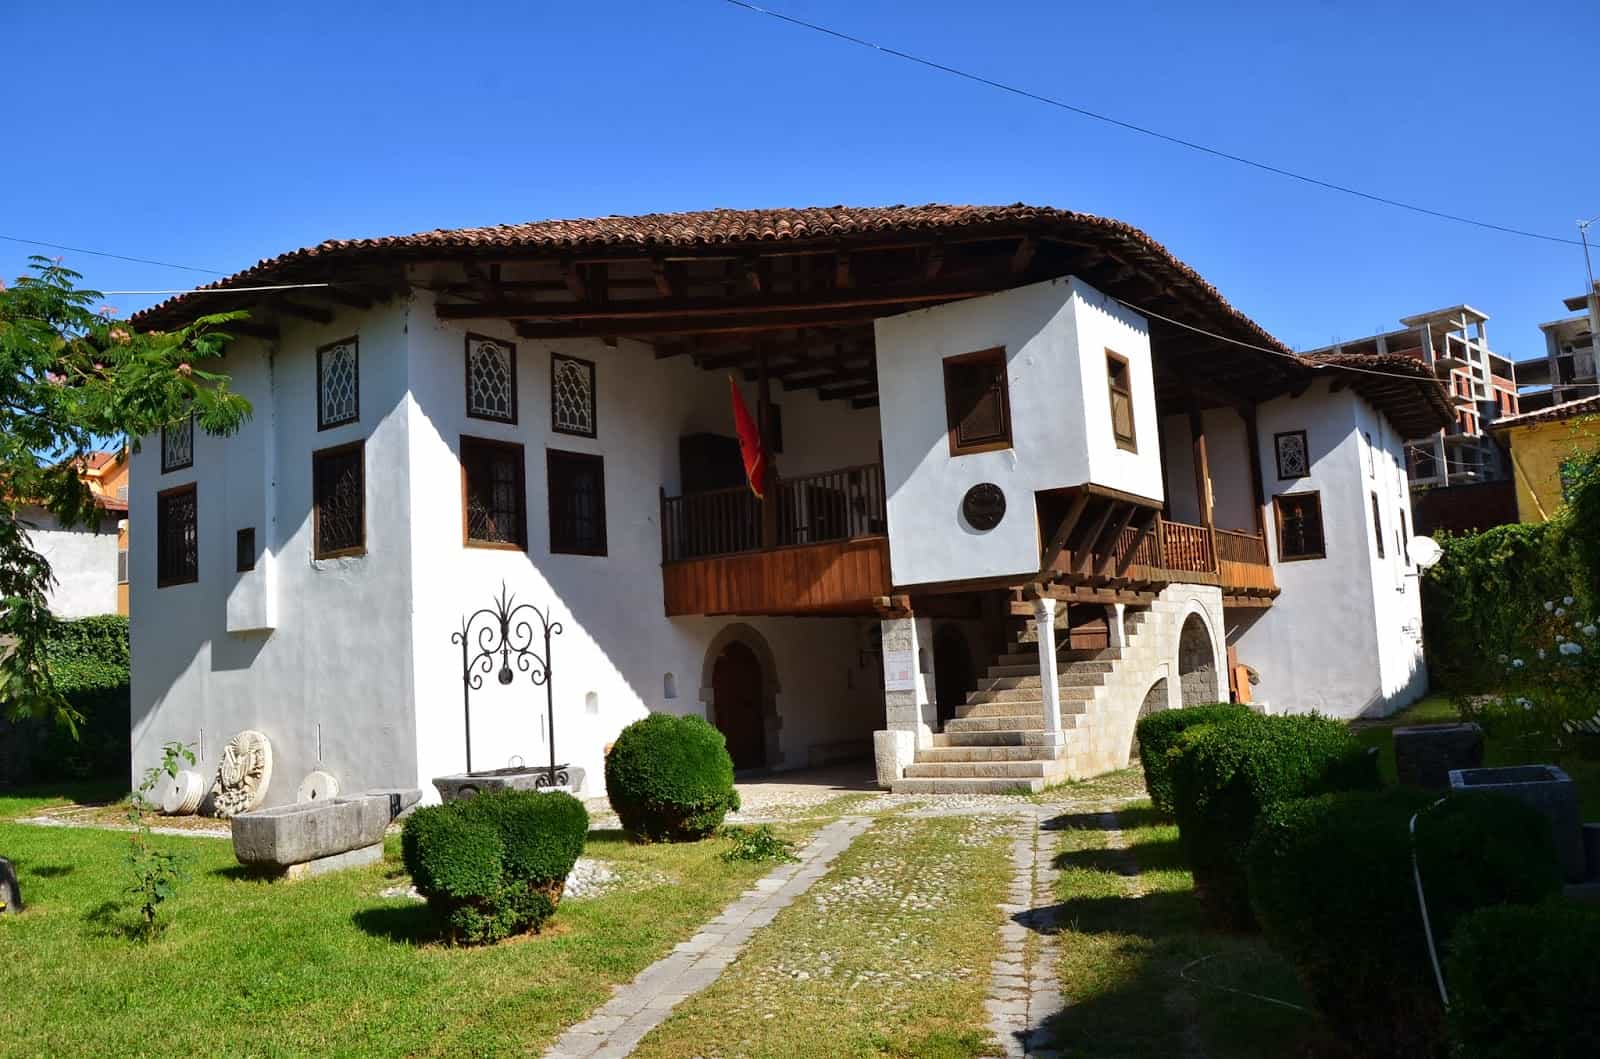 Shkodër Historical Museum in Shkodër, Albania